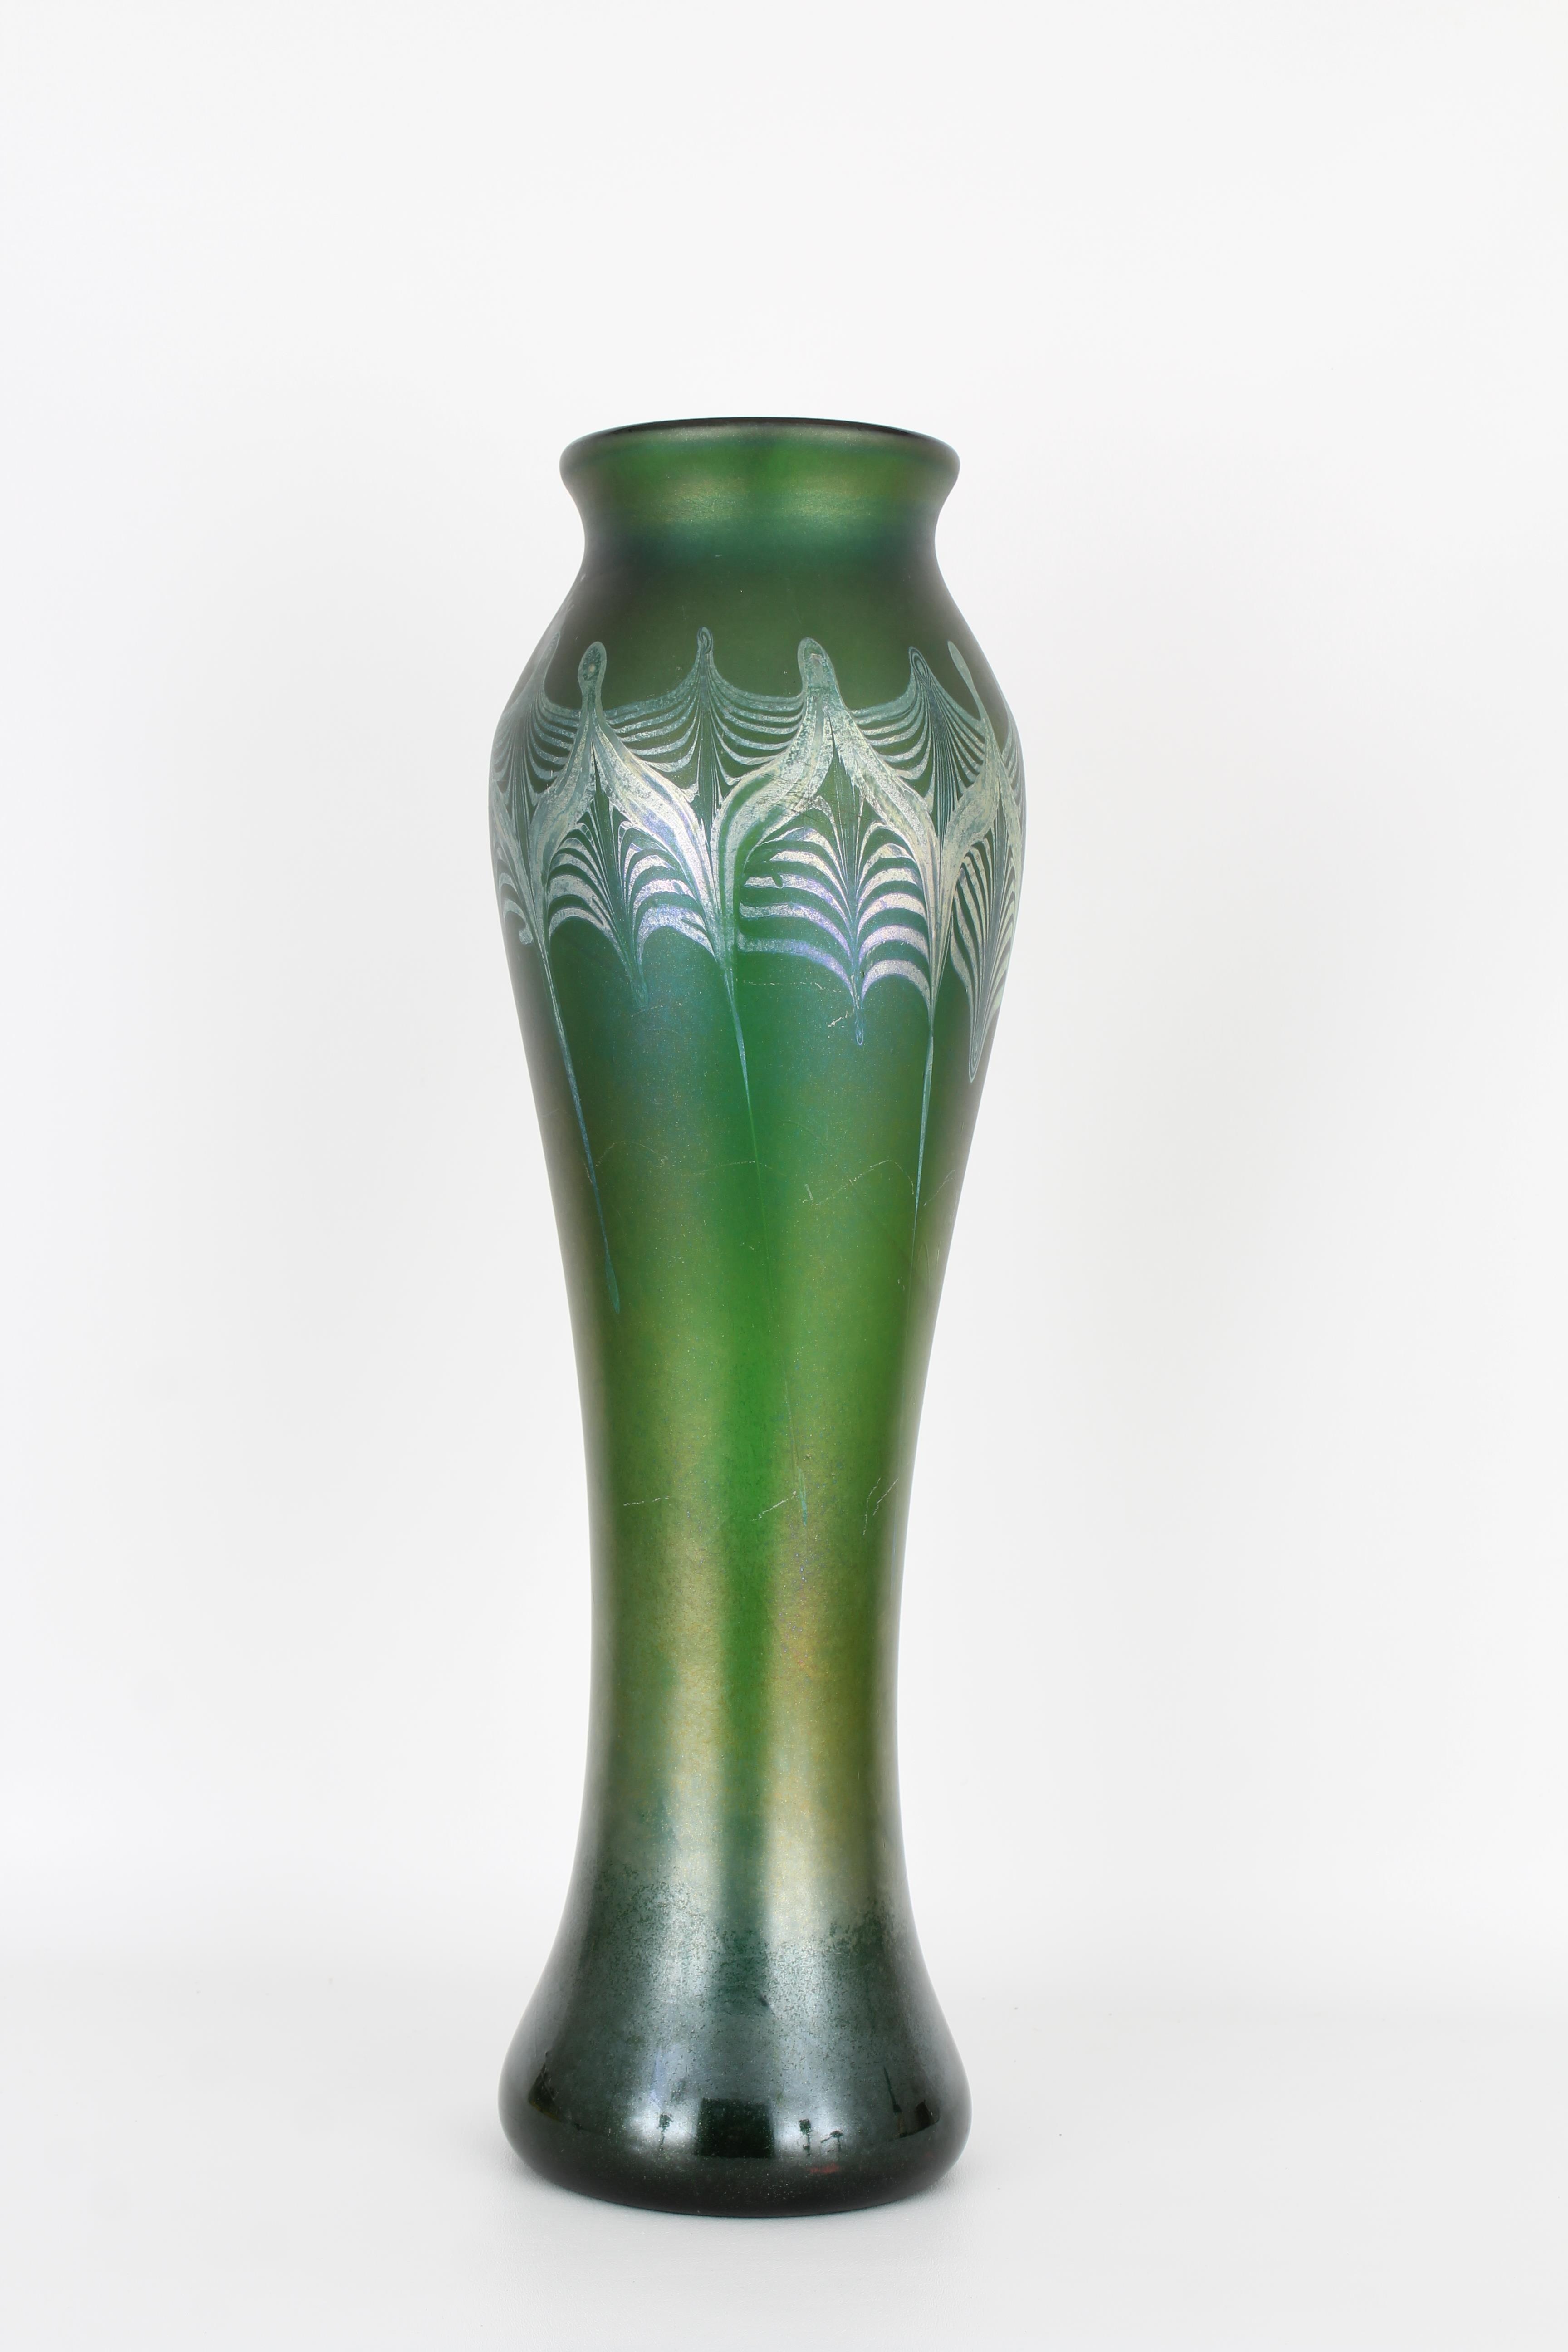 Large Tiffany Favrile Glass Vase - Image 3 of 10